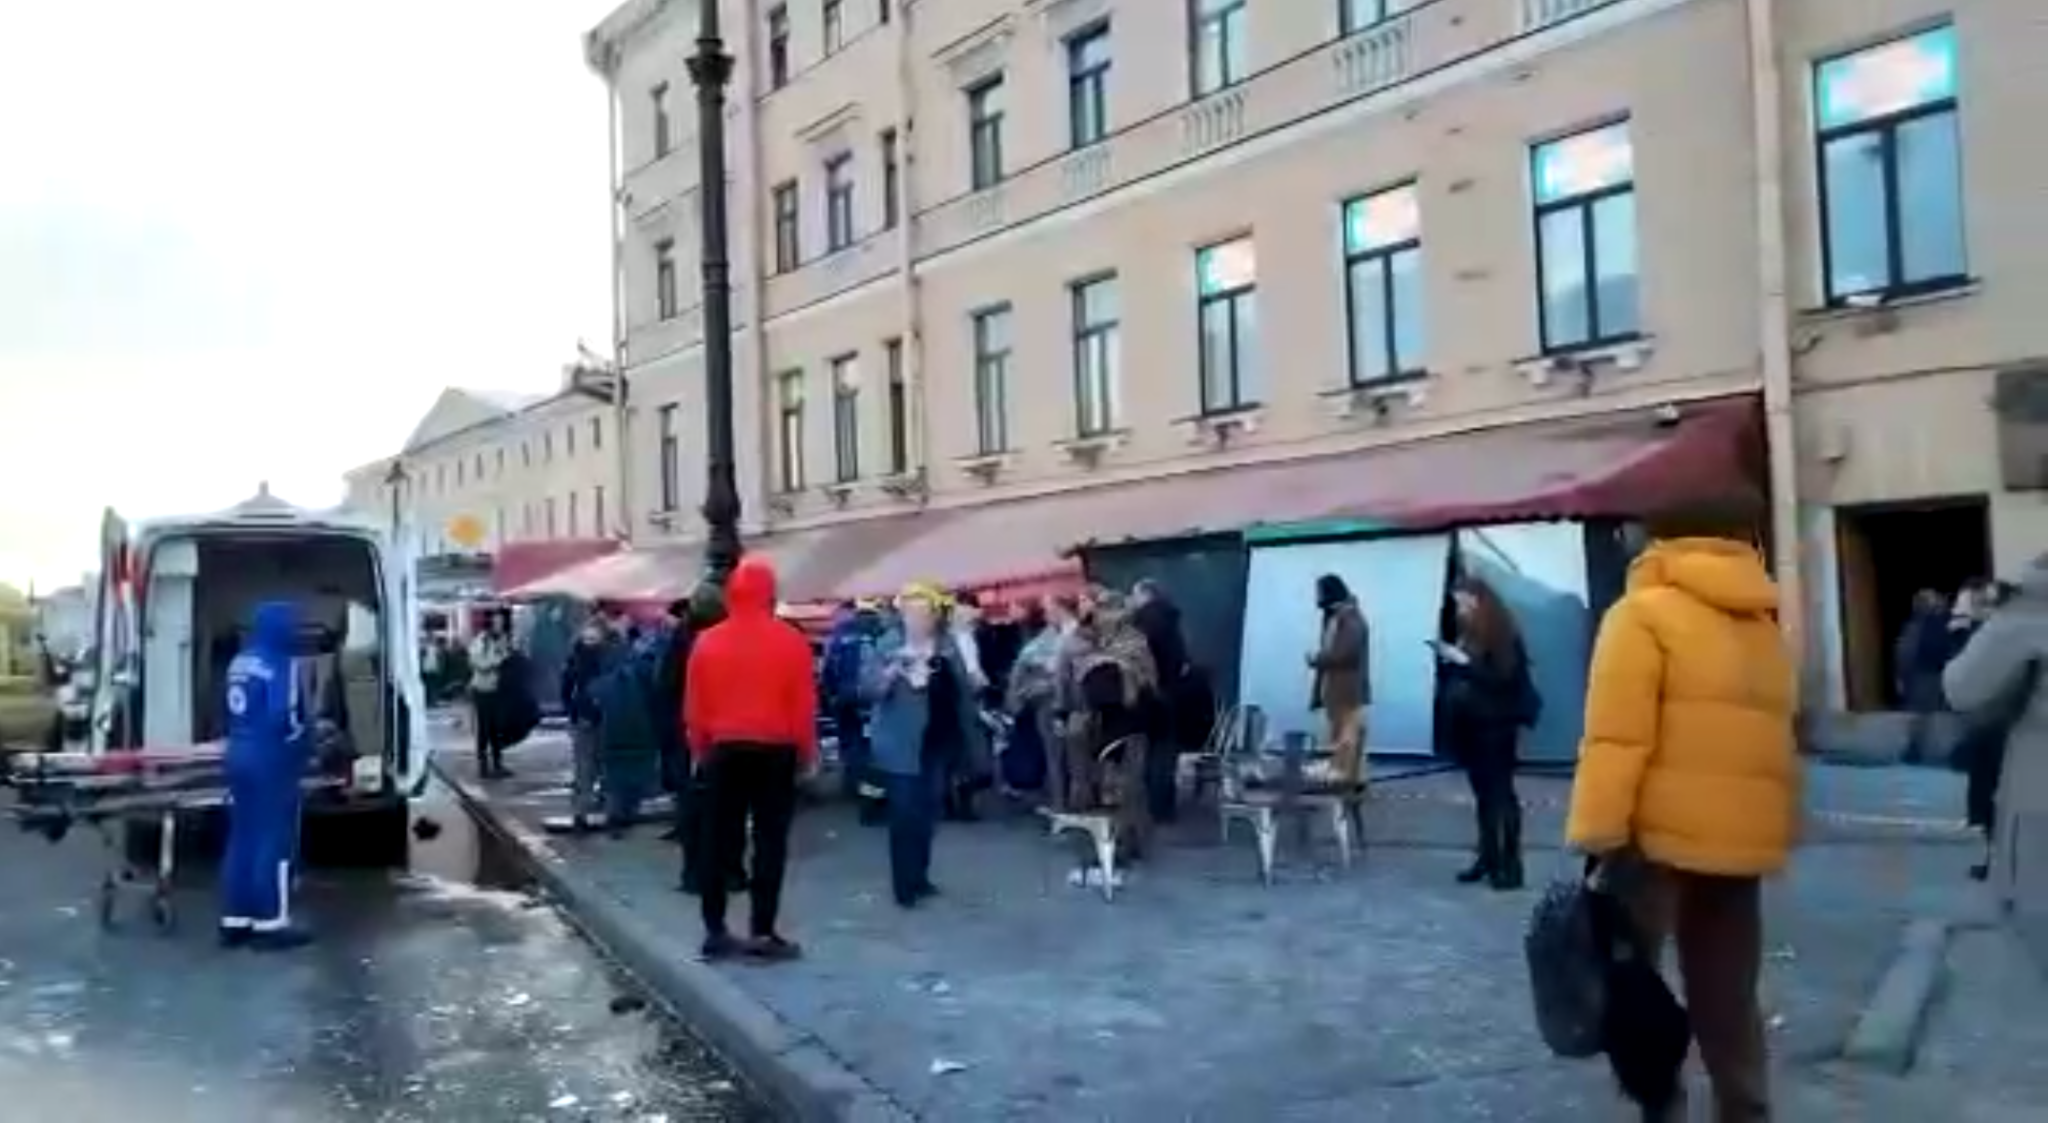 Последствия взрыва в кафе в Петербурге 2 апреля. Скриншот из видео в telegram